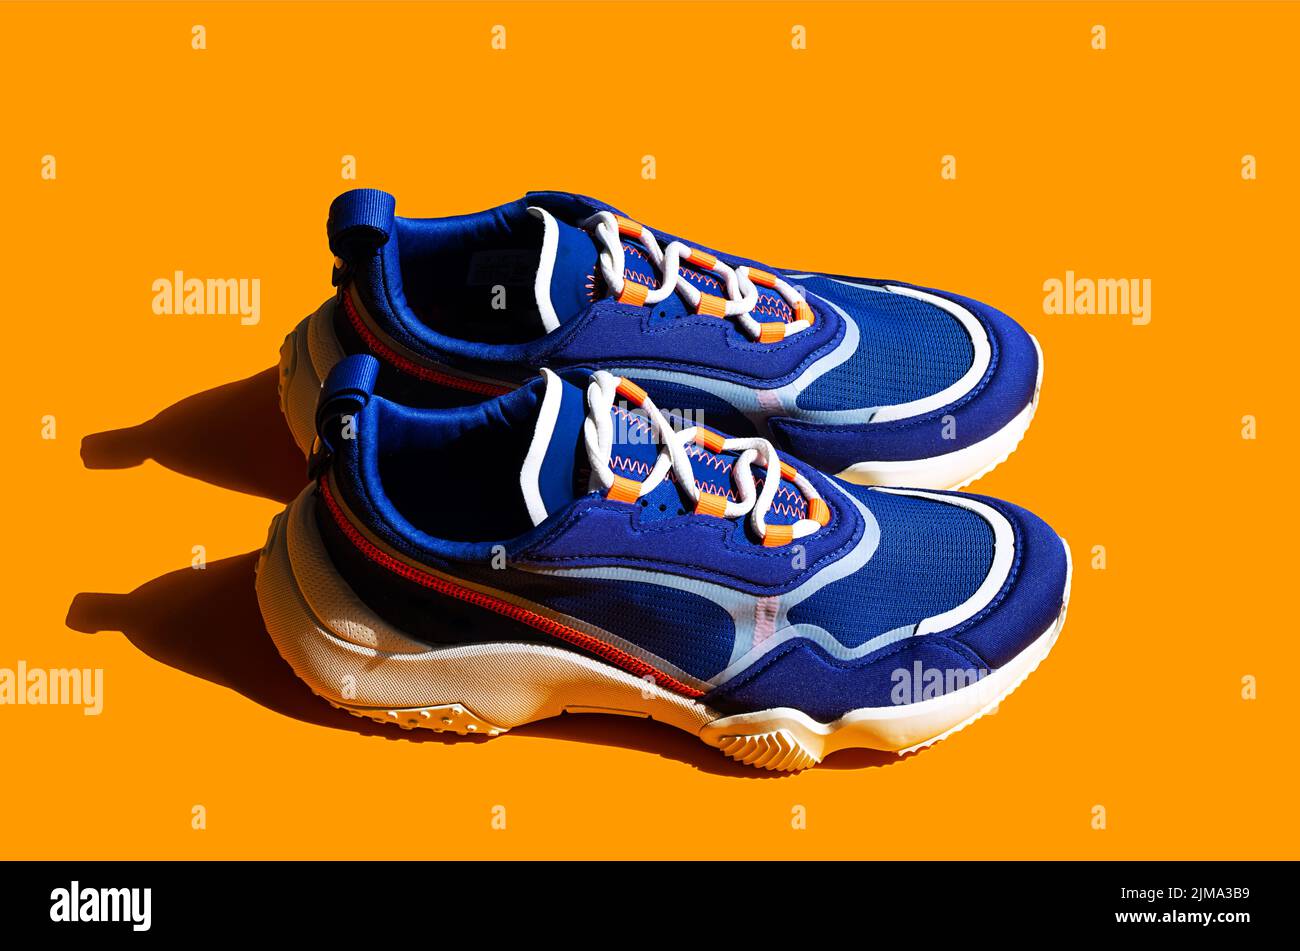 Blue sneakers on orange background. Trendy sport shoe, street casual footwear. Stock Photo